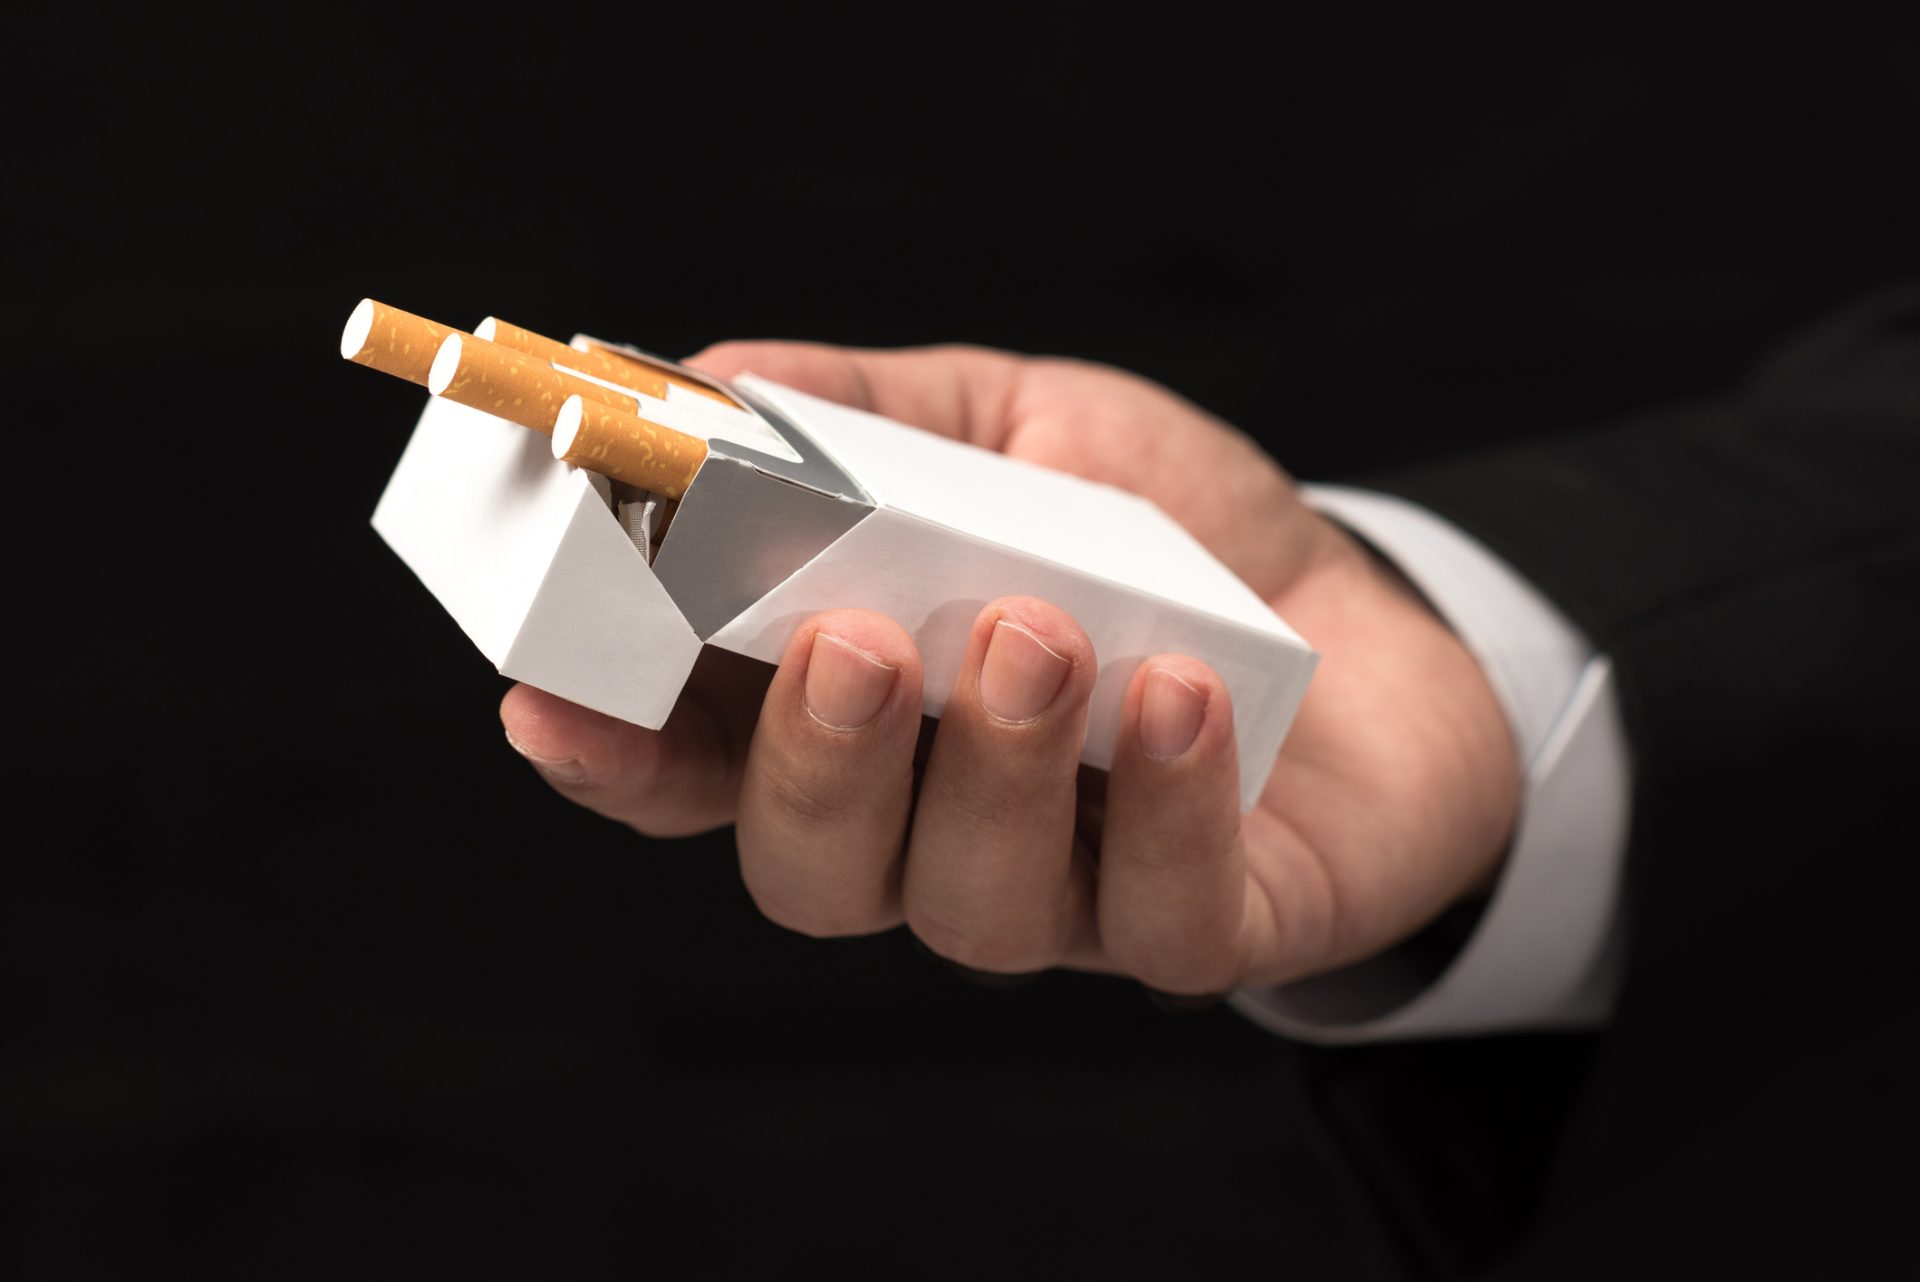 Maço de tabaco deverá aumentar 10 cêntimos no próximo ano